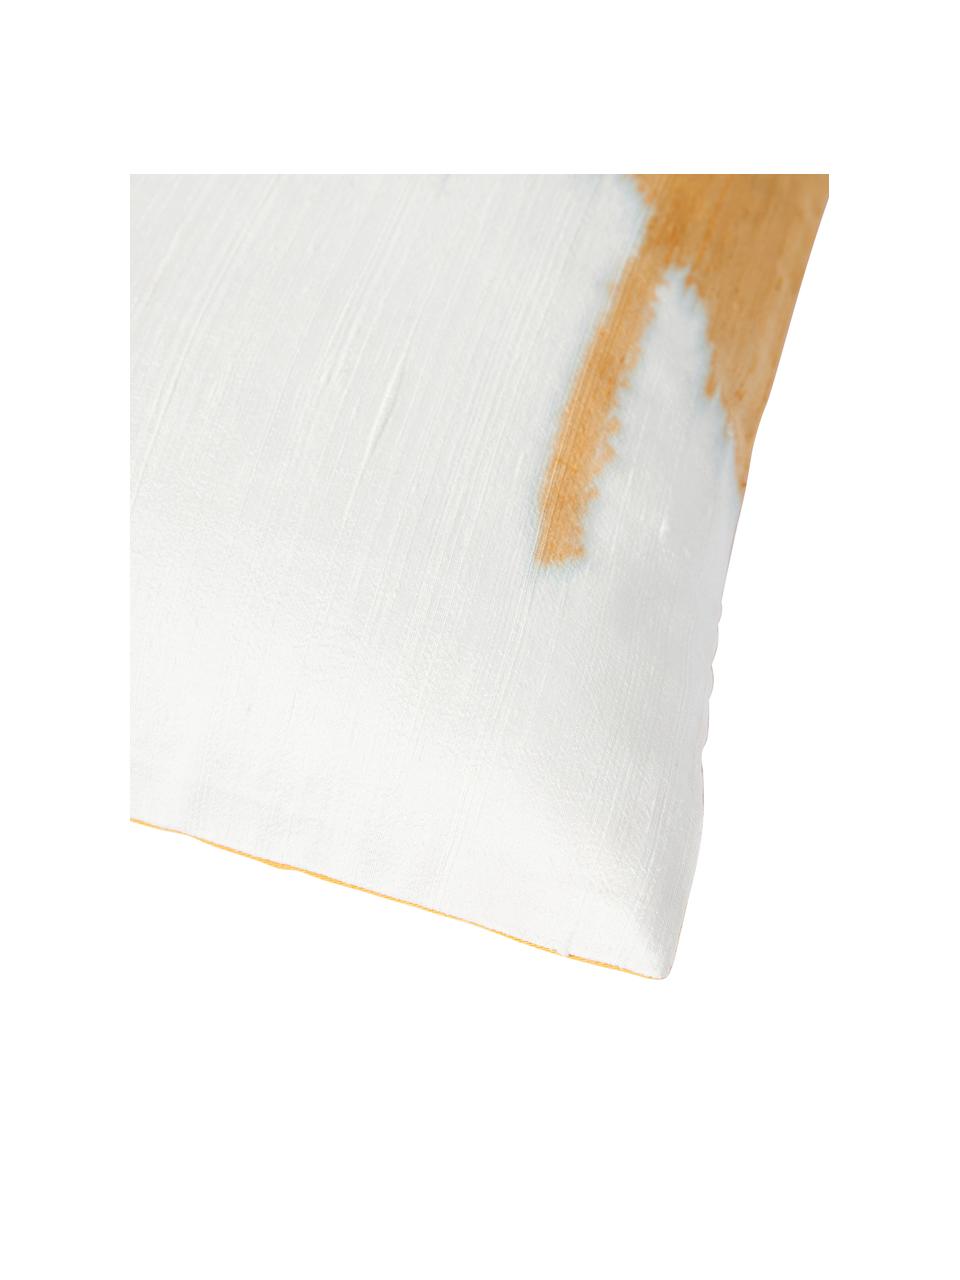 Kissenhülle Aryane aus Seide, Vorderseite: 100 % Seide, Rückseite: 100% Baumwolle, Gelb, Weiß, B 45 x L 45 cm